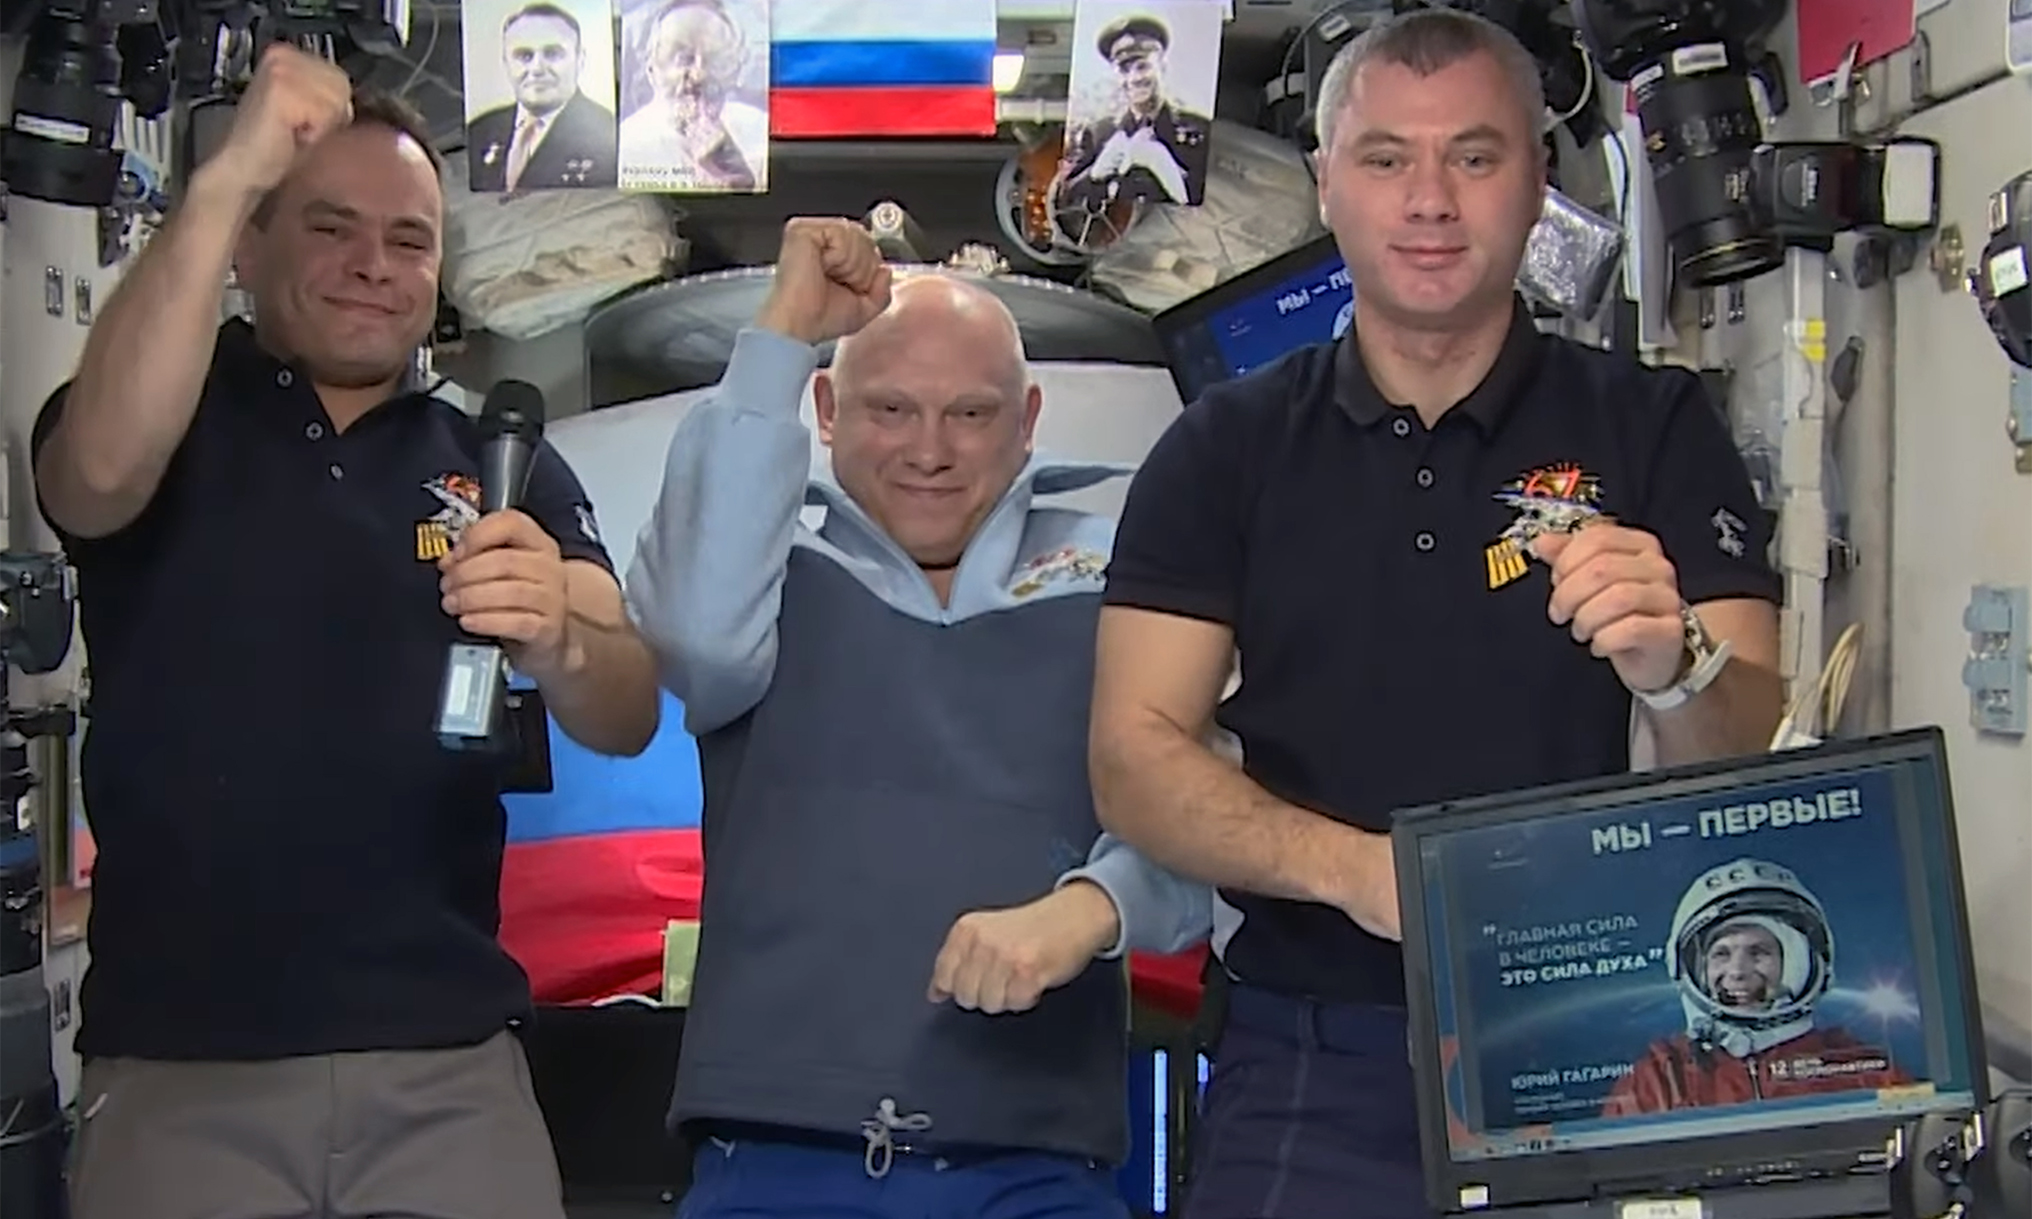 Кимряк Сергей Корсаков поздравил россиян из космоса